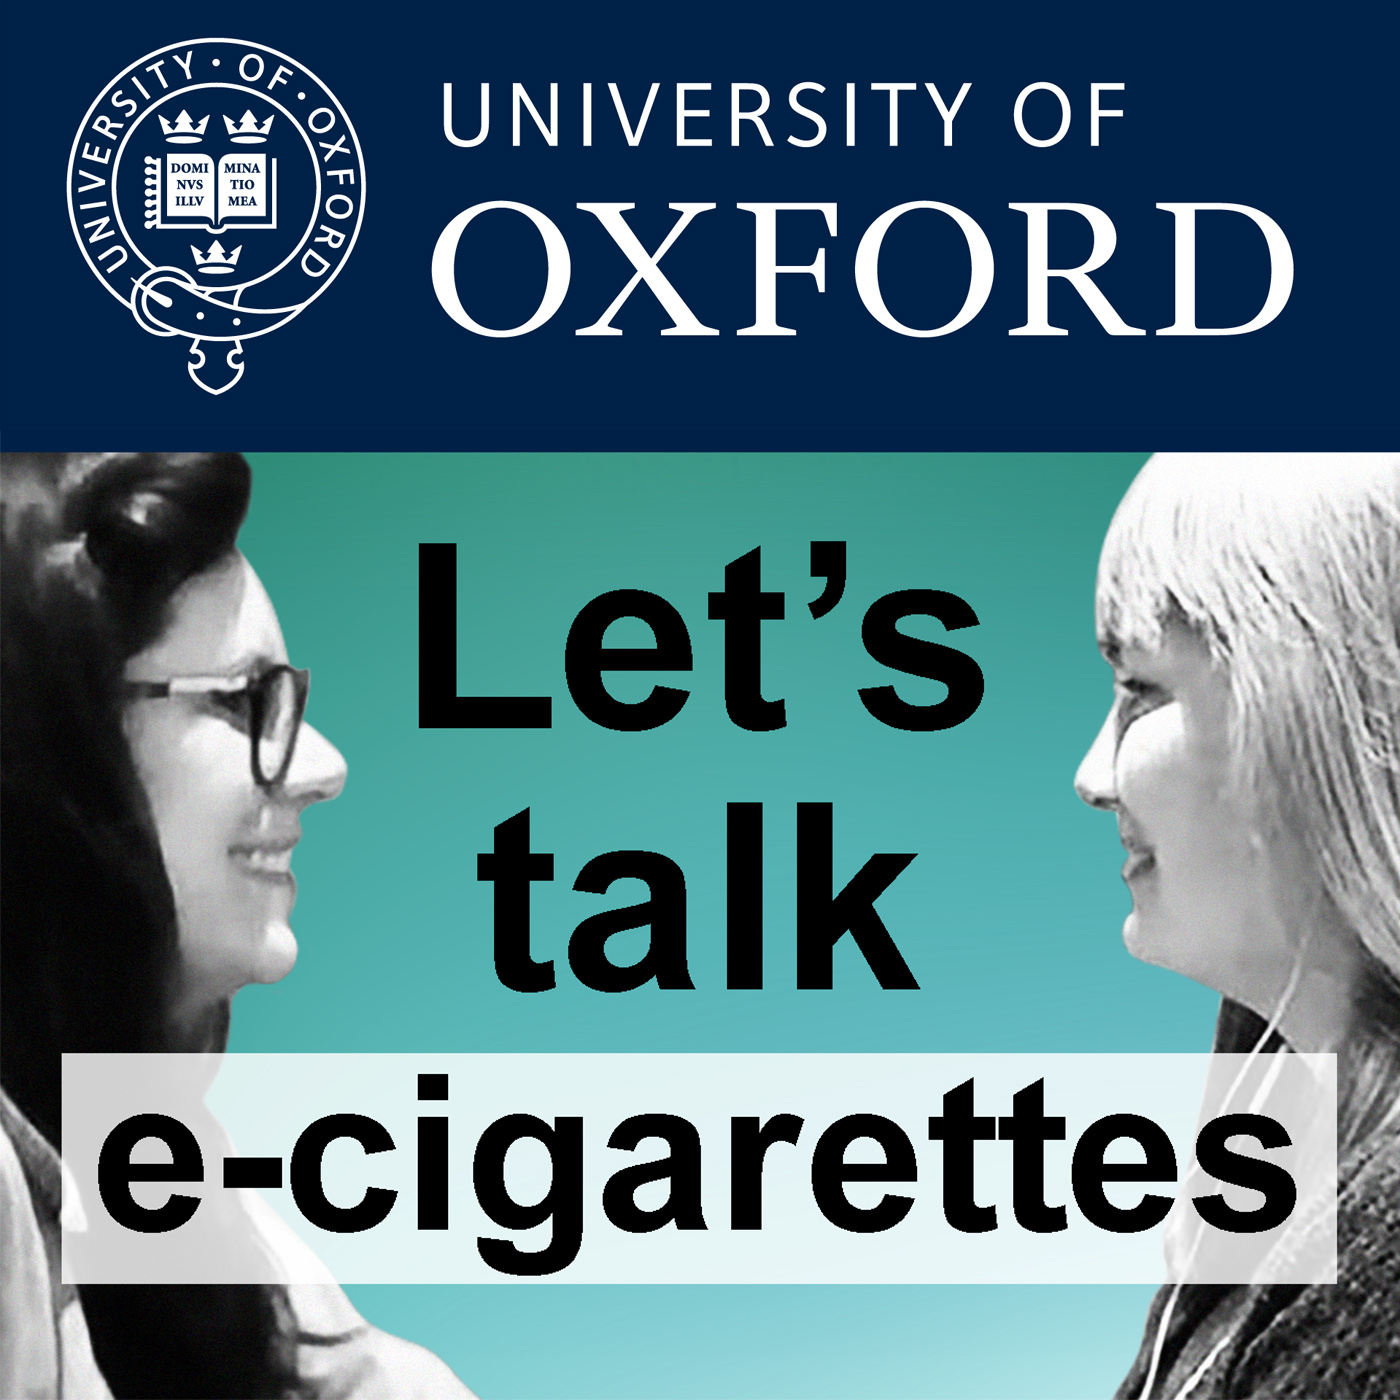 Let's talk e-cigarettes